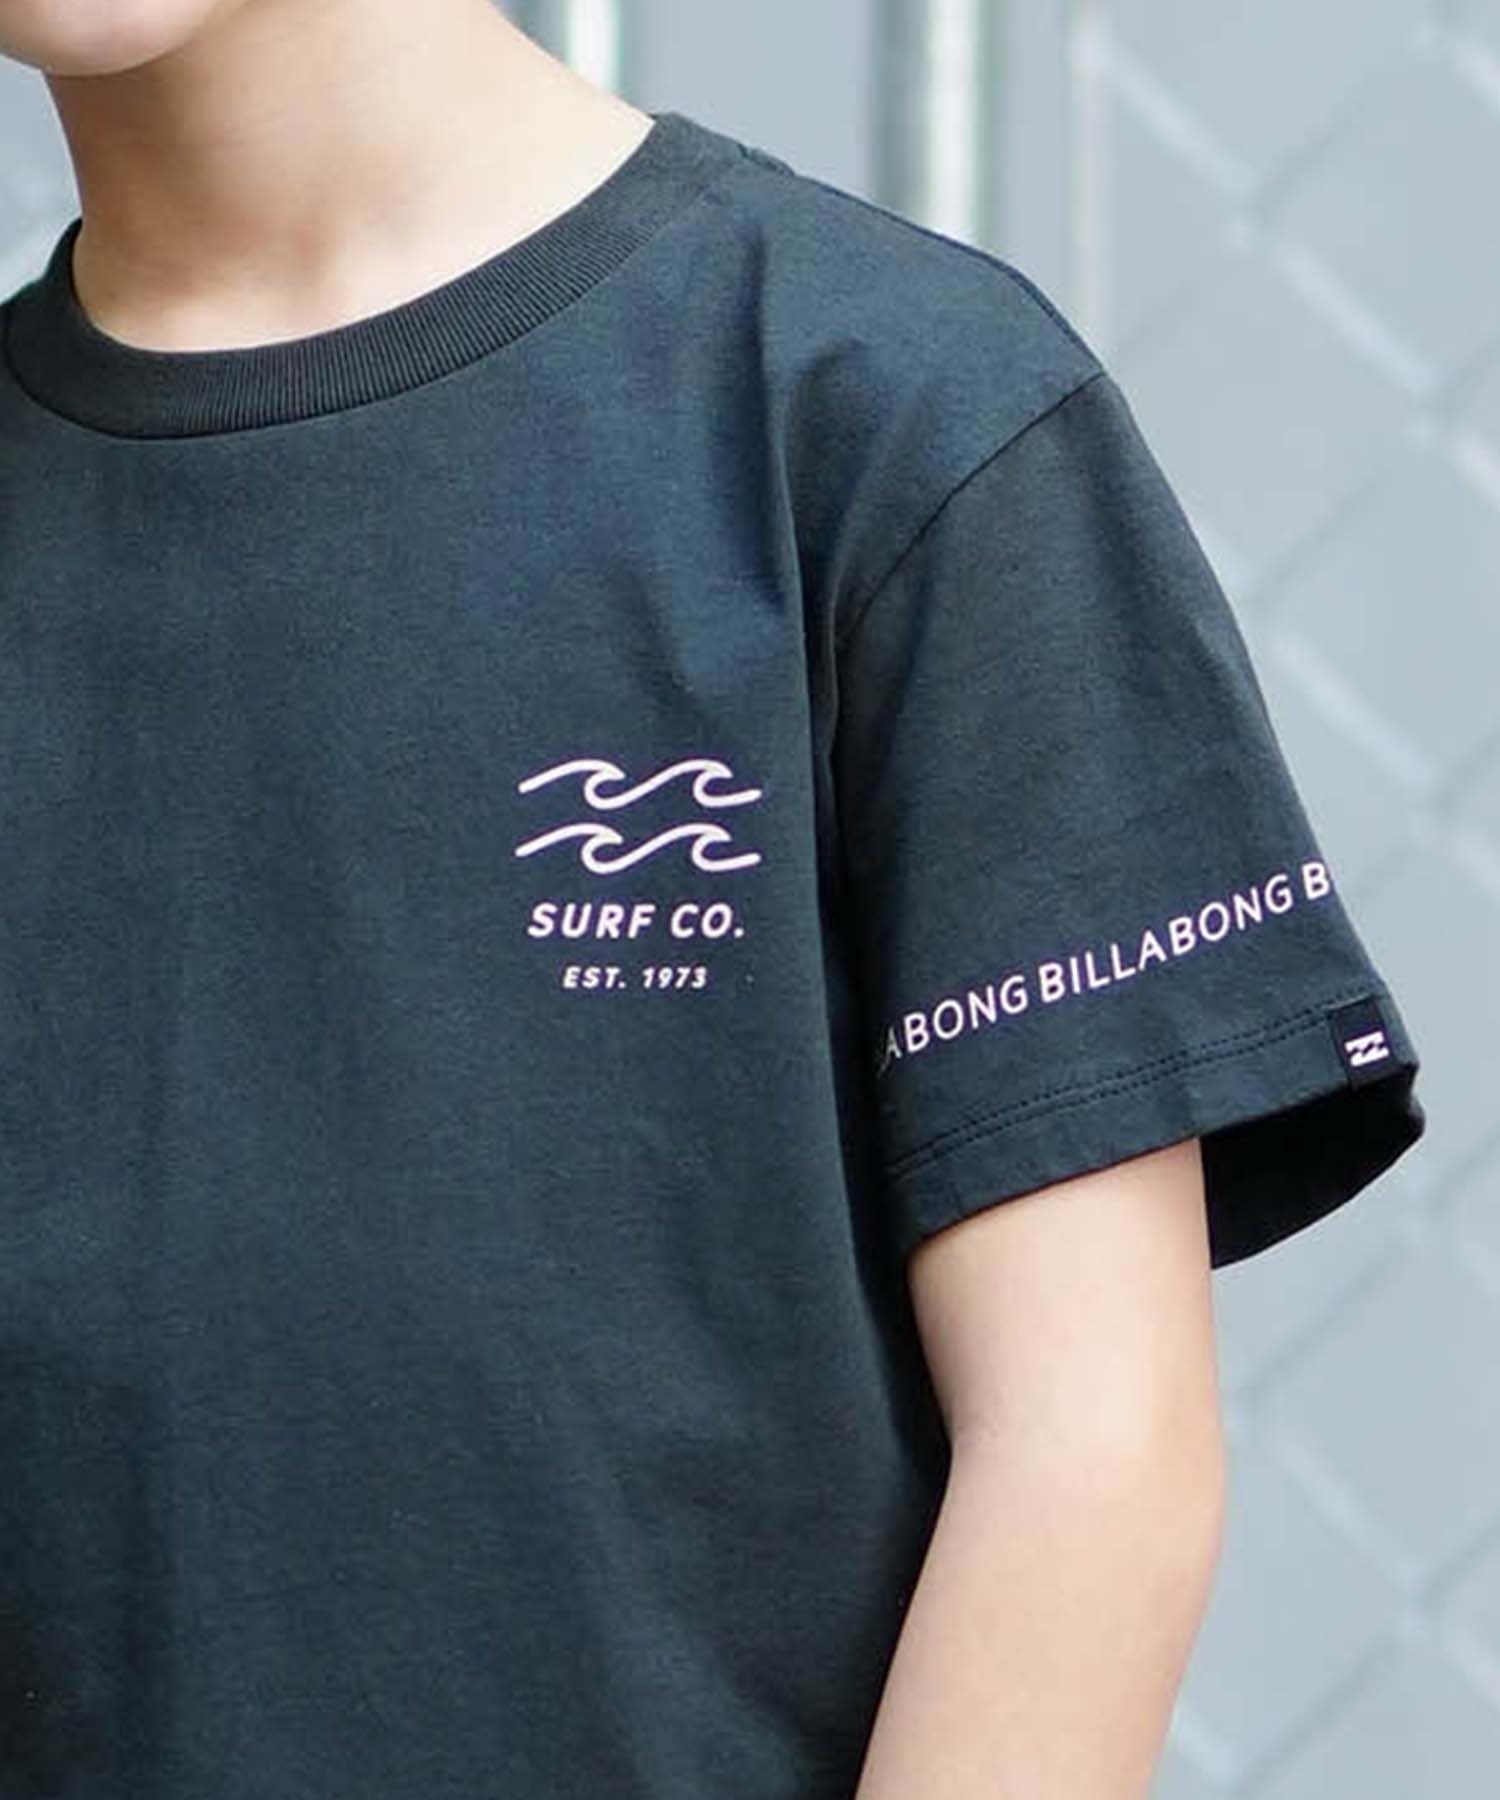 【クーポン対象】BILLABONG ビラボン ONE TIME キッズ 半袖 Tシャツ バックプリント BE015-201(MNT-130cm)